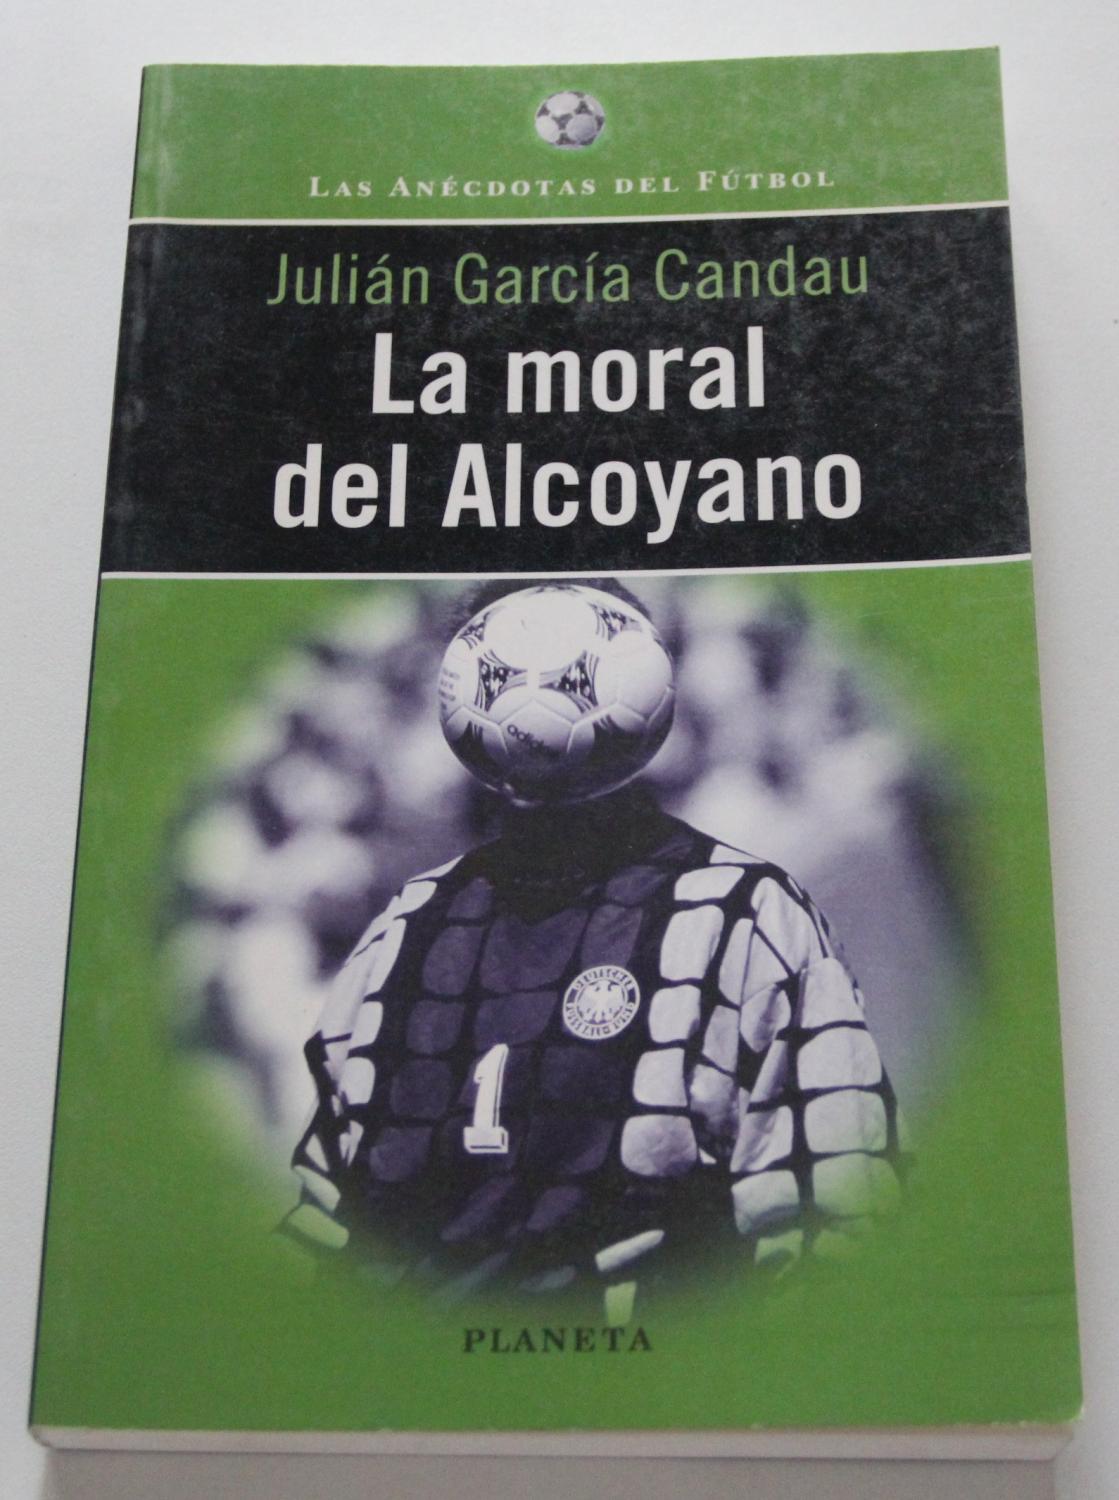 La moral del alcoyano (Las anecdotas del futbol) (Spanish Edition) - Garcia Candau, Julian